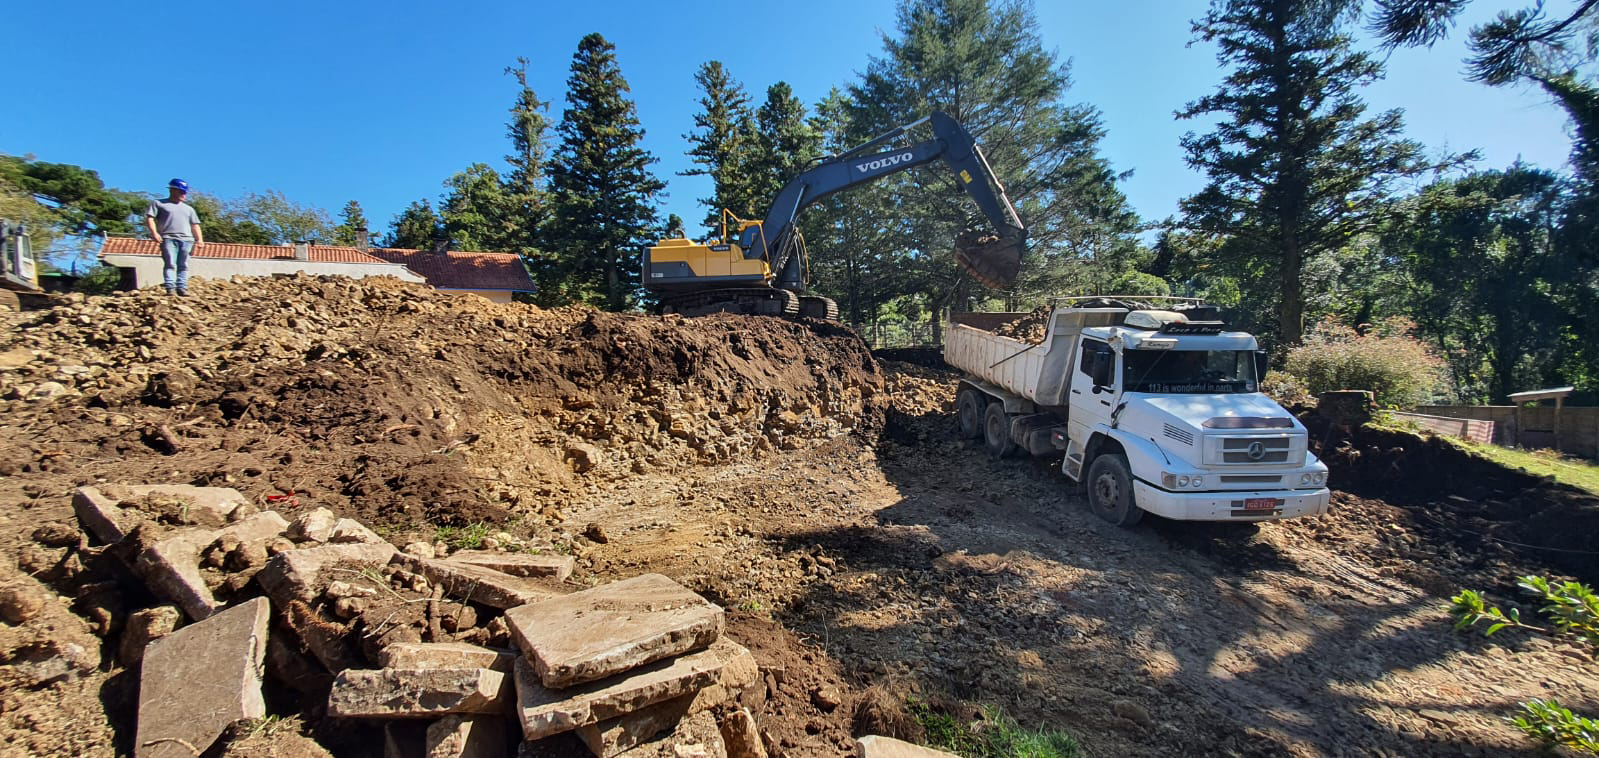 Máquina colocando a terra no caminhão, parte do processo de escavação das obras do Poehma Lago Negro